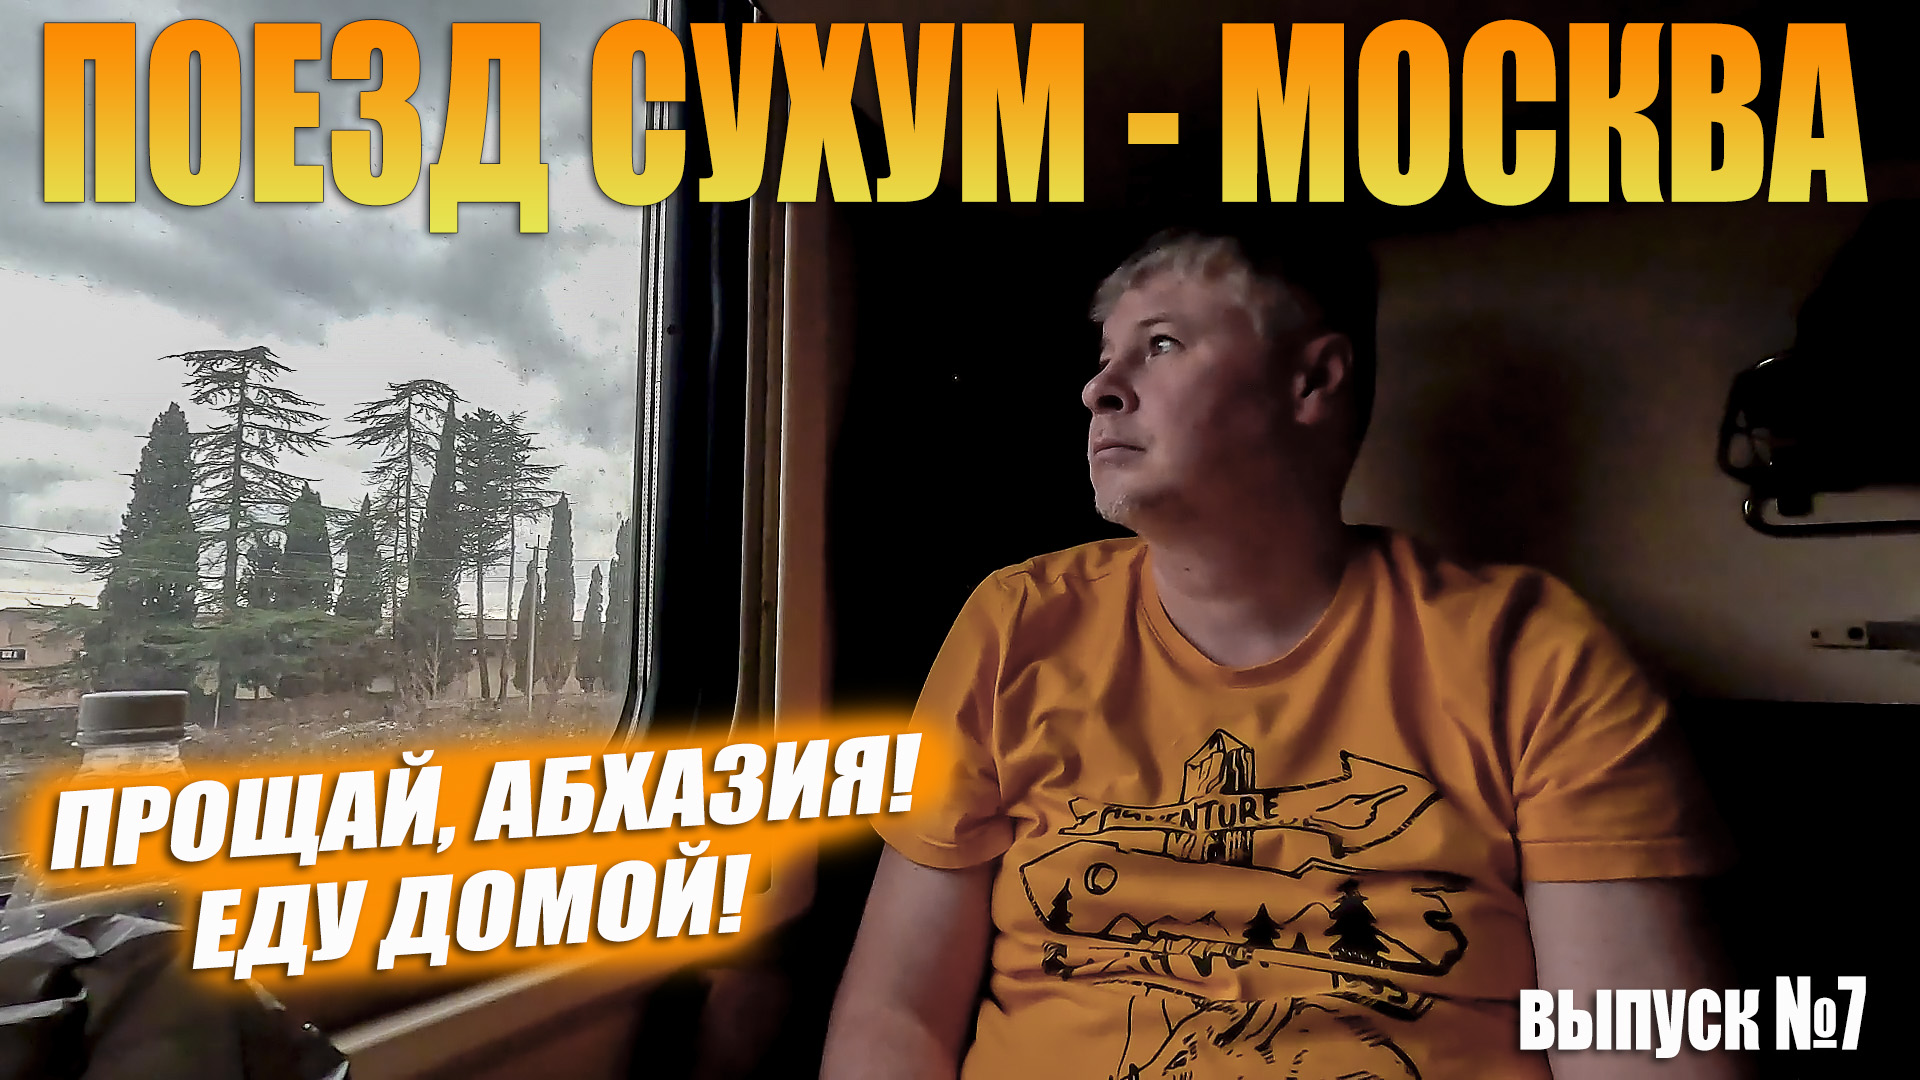 Поезд Сухум - Москва. 38 часов дороги. Возвращаюсь домой.